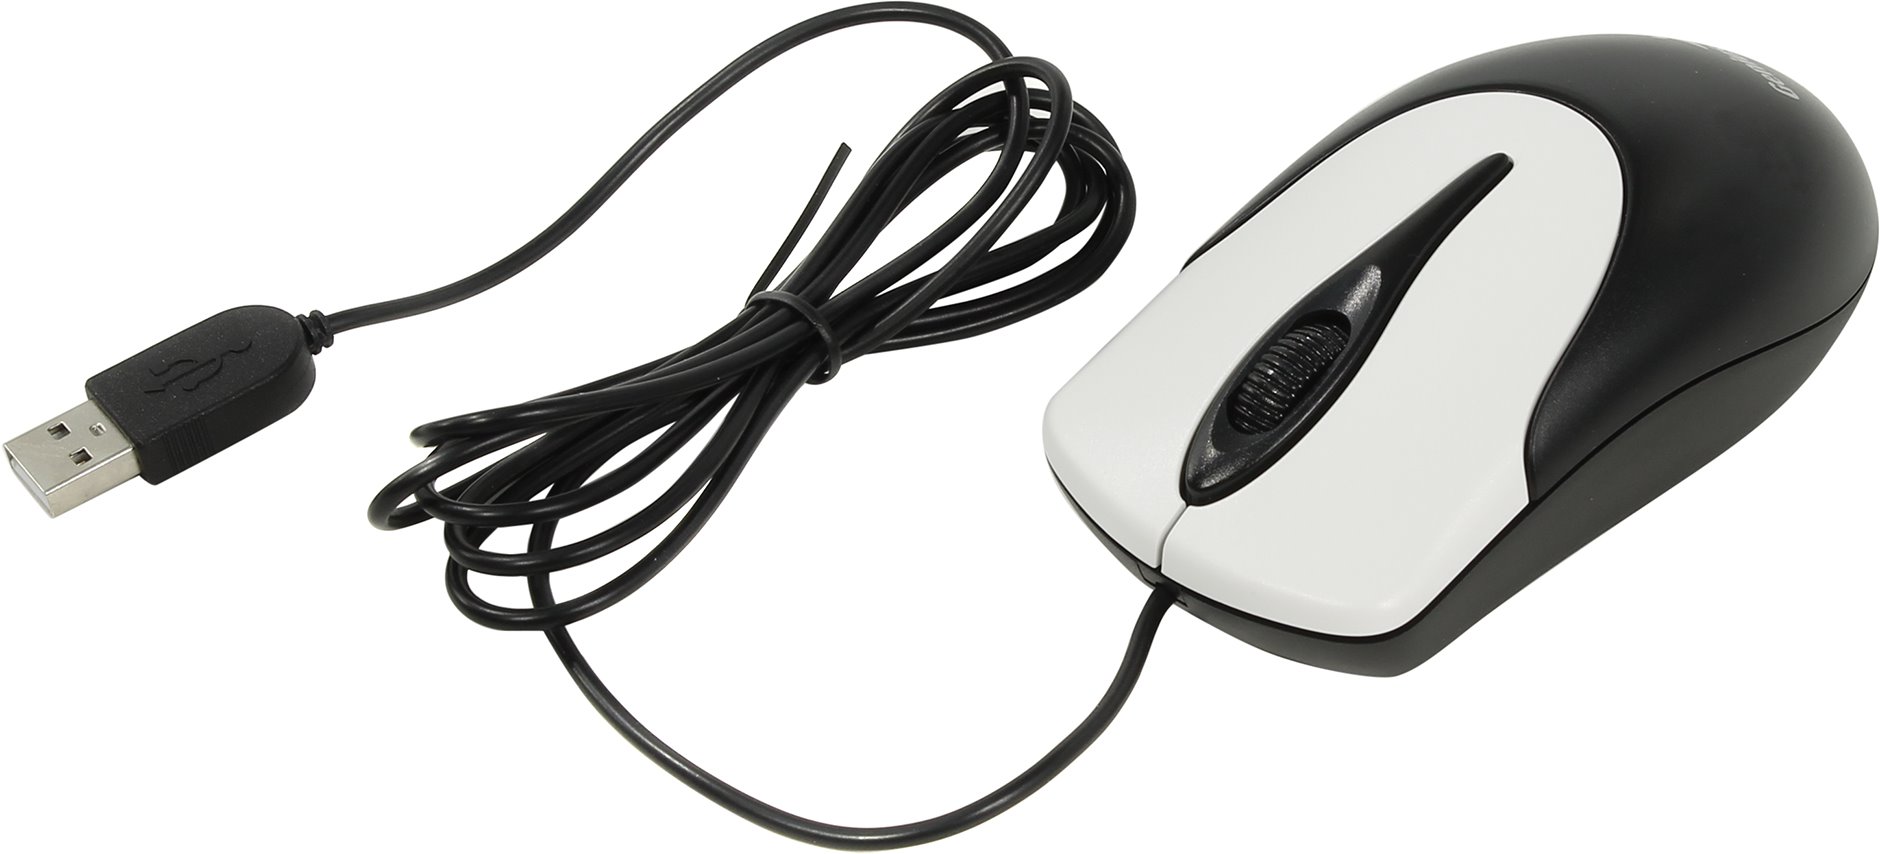 Мышь проводная Genius NetScroll 100 V2 Black-Grey USB, 800dpi, оптическая светодиодная, USB